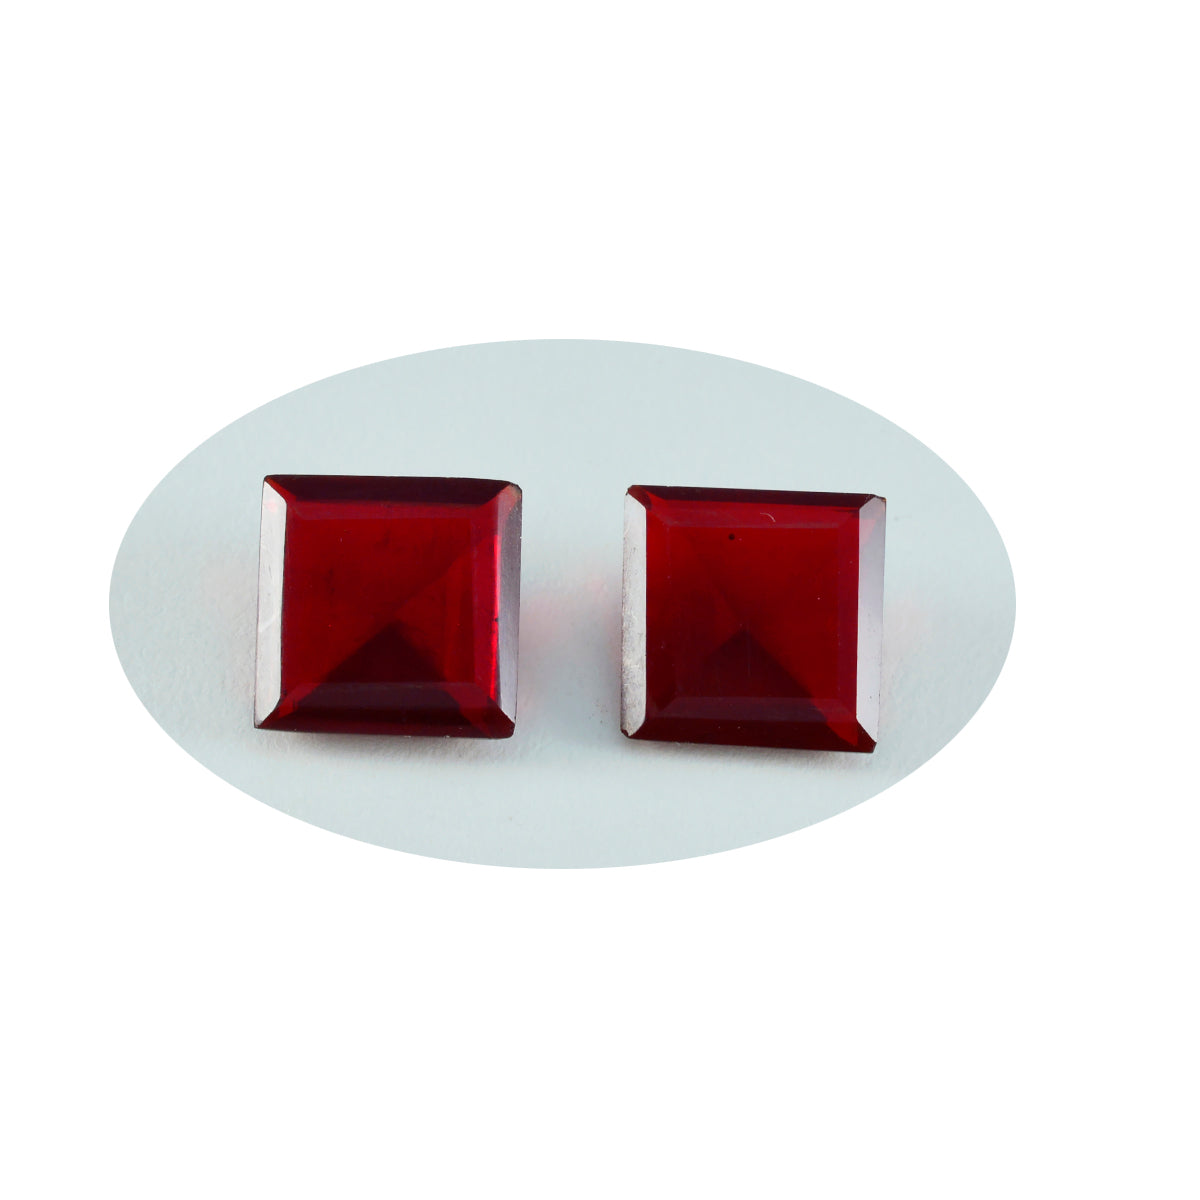 riyogems 1 шт. красный рубин cz ограненный 13x13 мм квадратной формы красивый качественный драгоценный камень